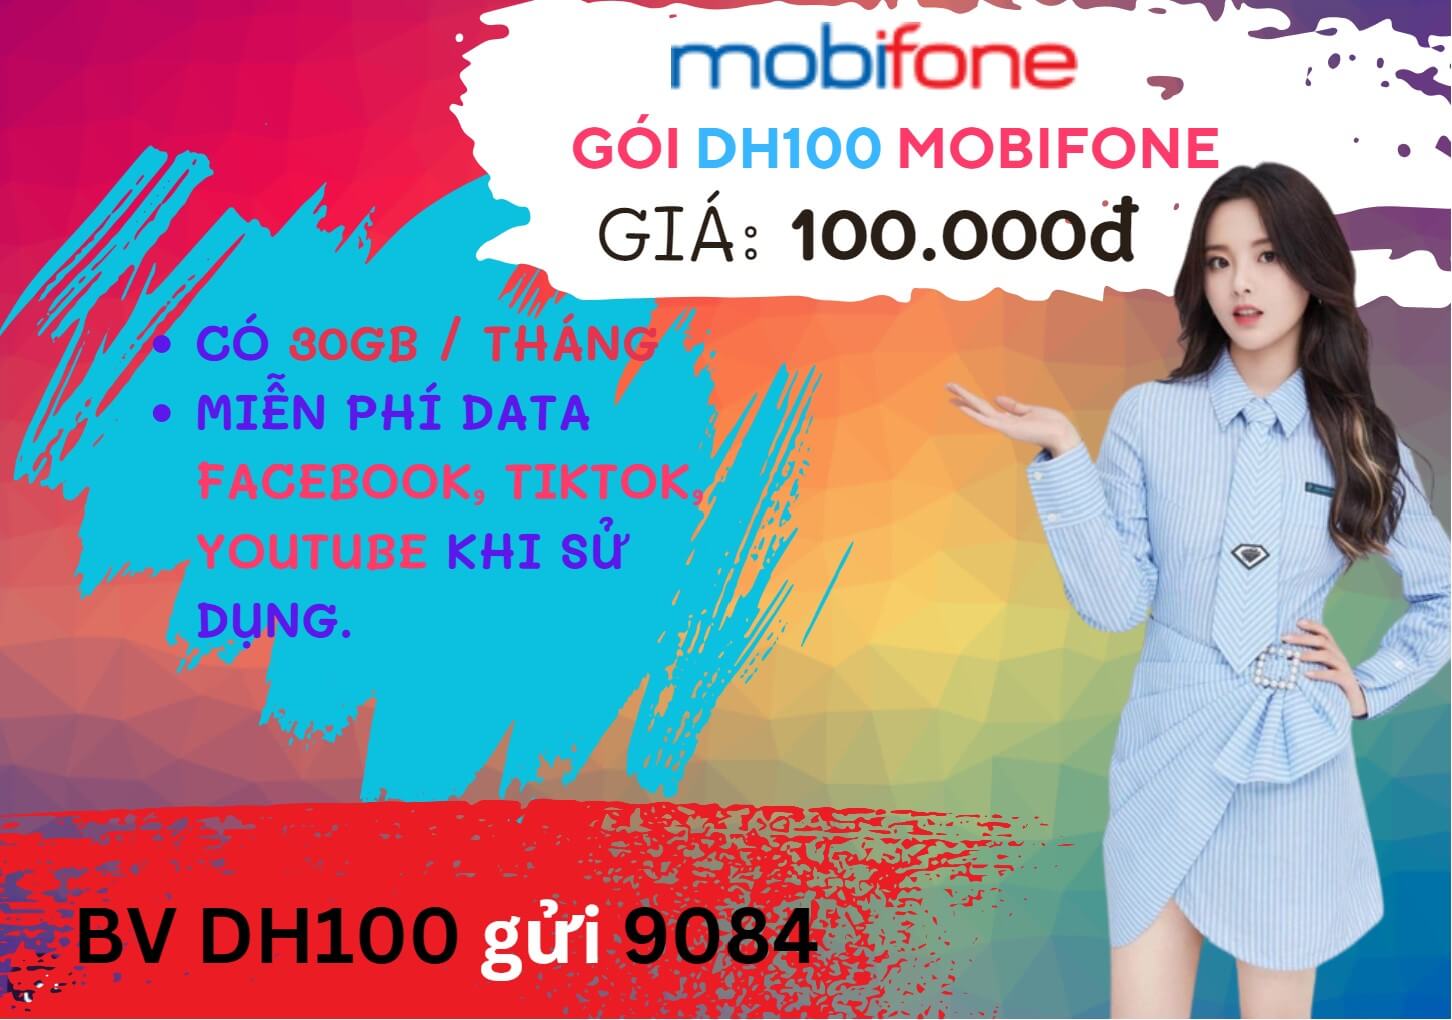 Cách đăng ký gói cước 12DH100 Mobifone nhận ưu đãi 360GB- free học tiếng Anh, lướt MXH liên tục 12 tháng